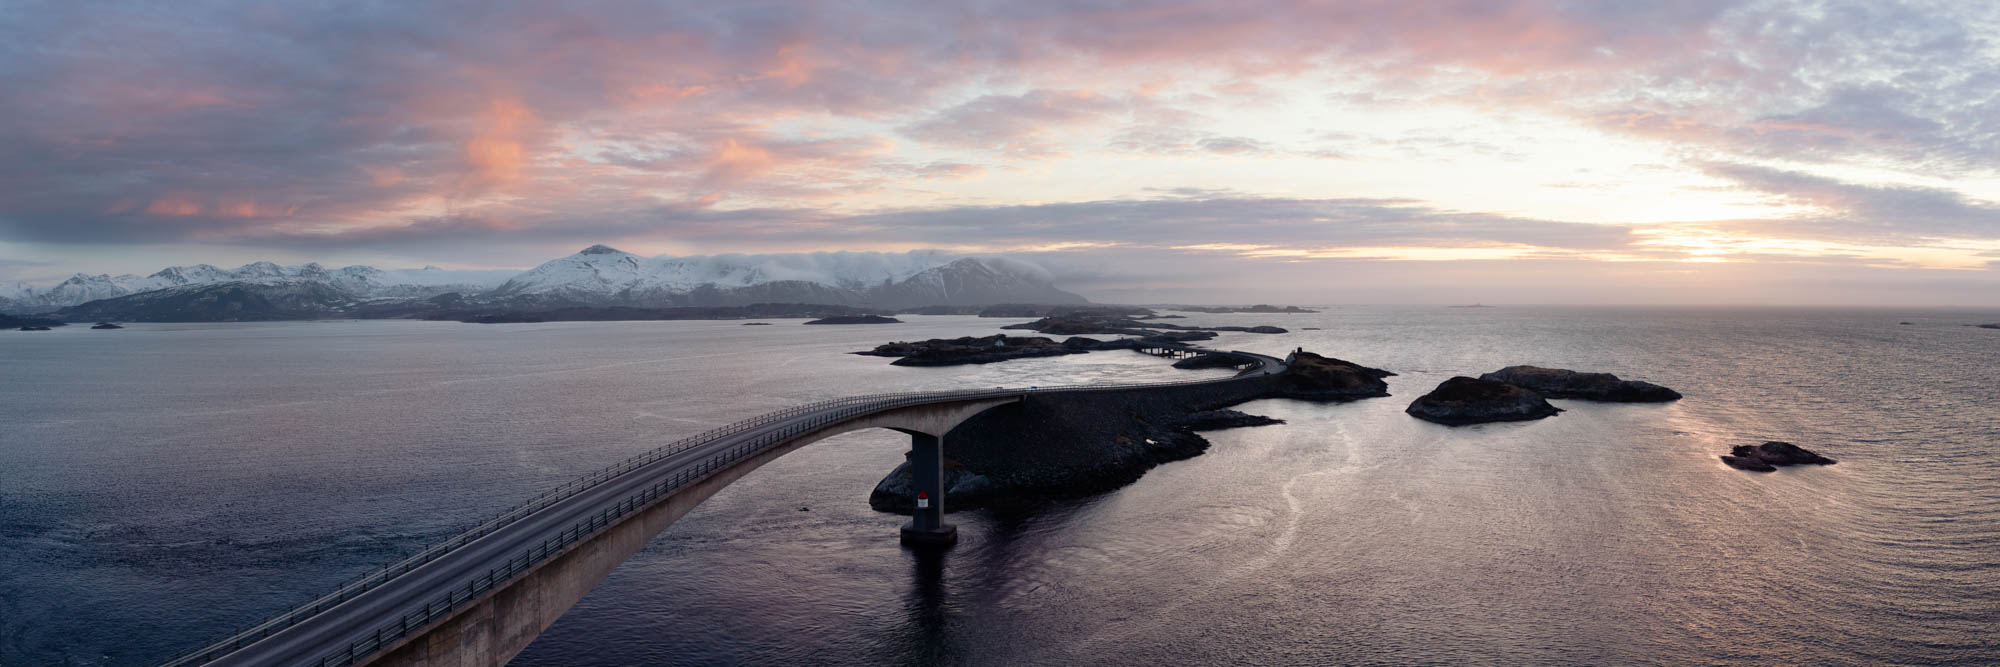 Aerial Panorama of The Atlantic Ocean road at sunset in Norway